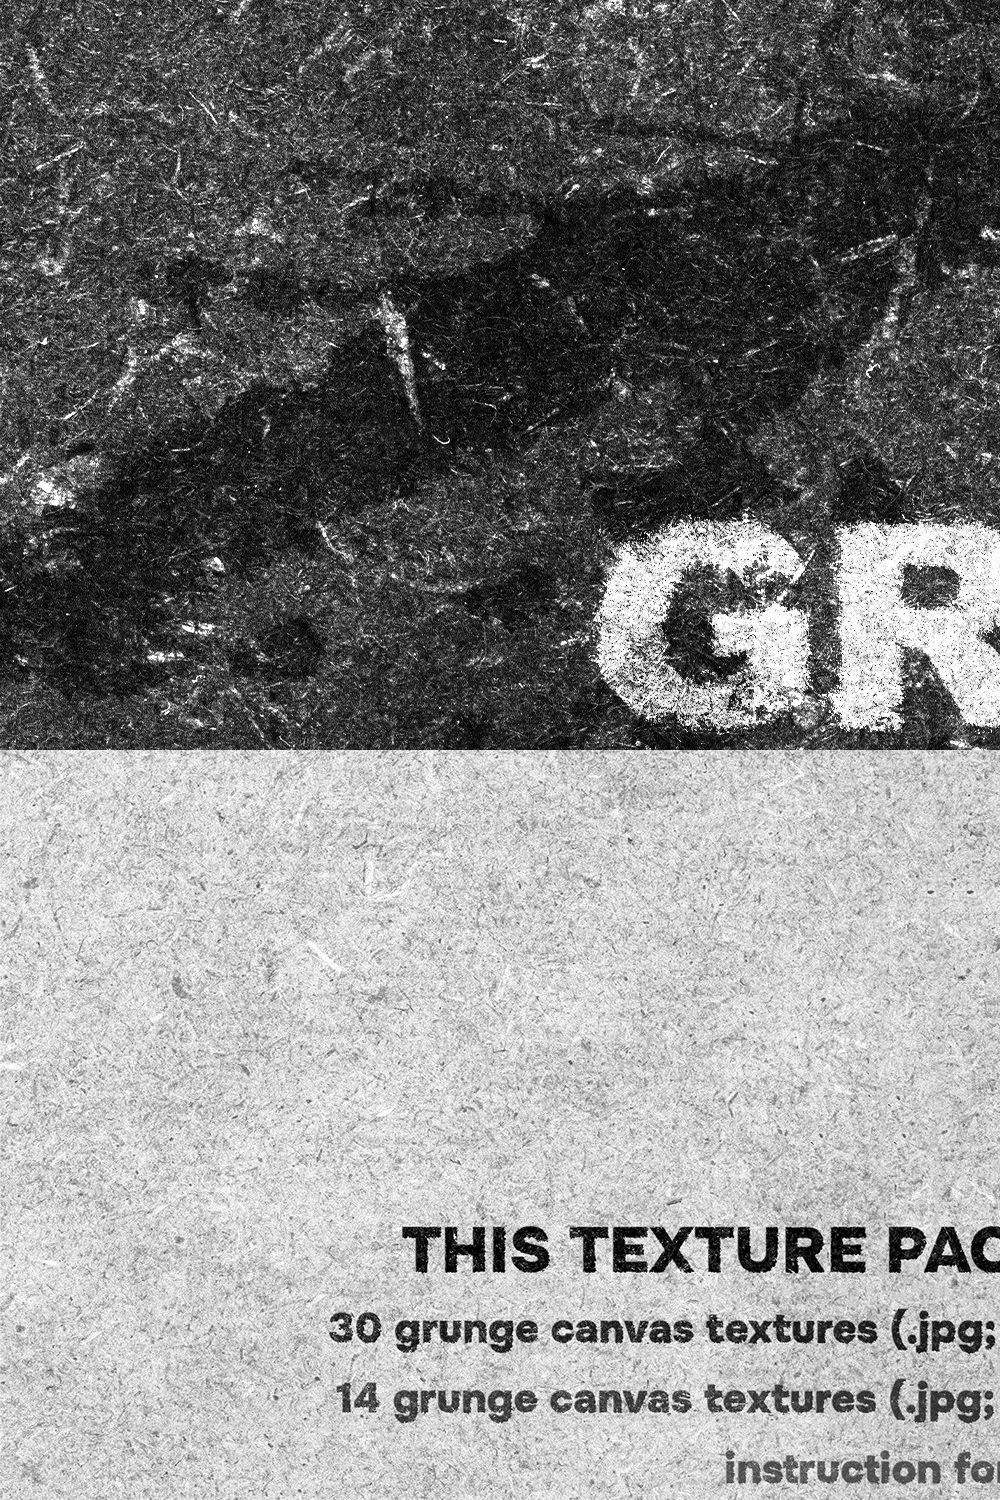 GRUNGE CANVAS retro vintage texture pinterest preview image.